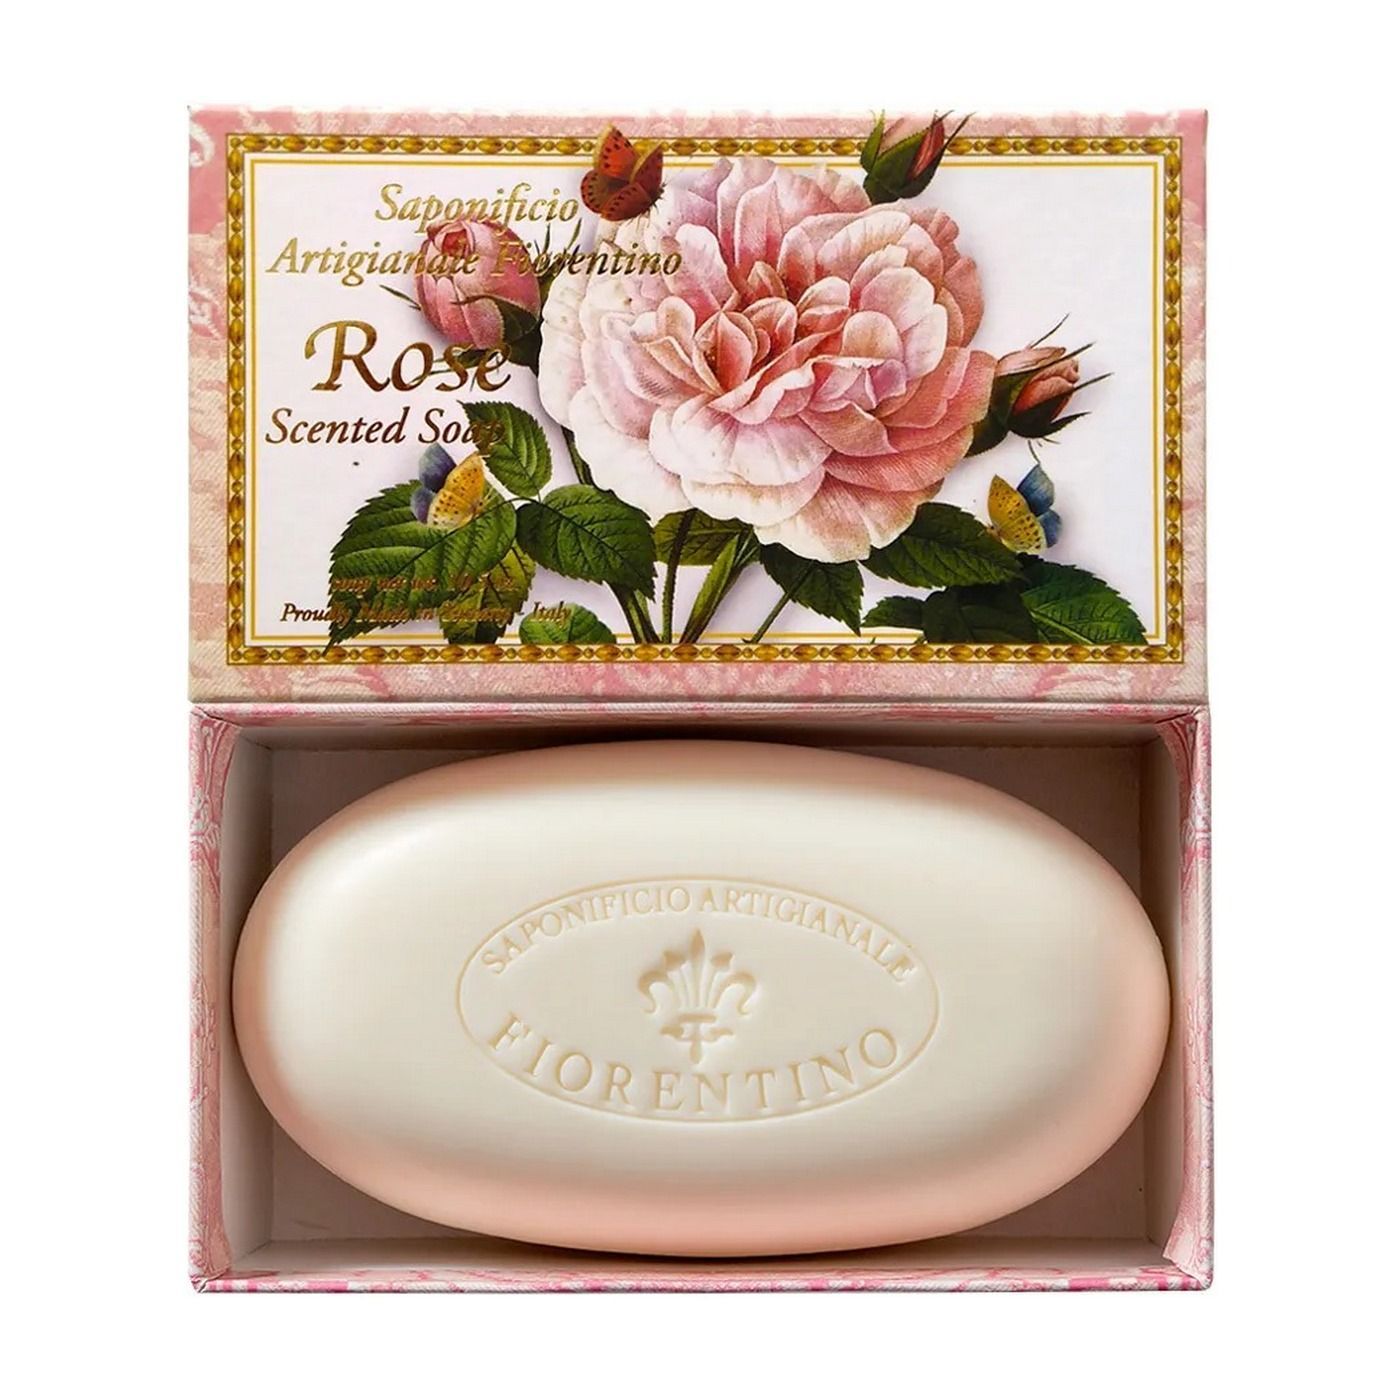 Saponificio Artigianale Fiorentino Rose Мыло туалетное ручной работы с ароматом Розы 300 гр в коробке